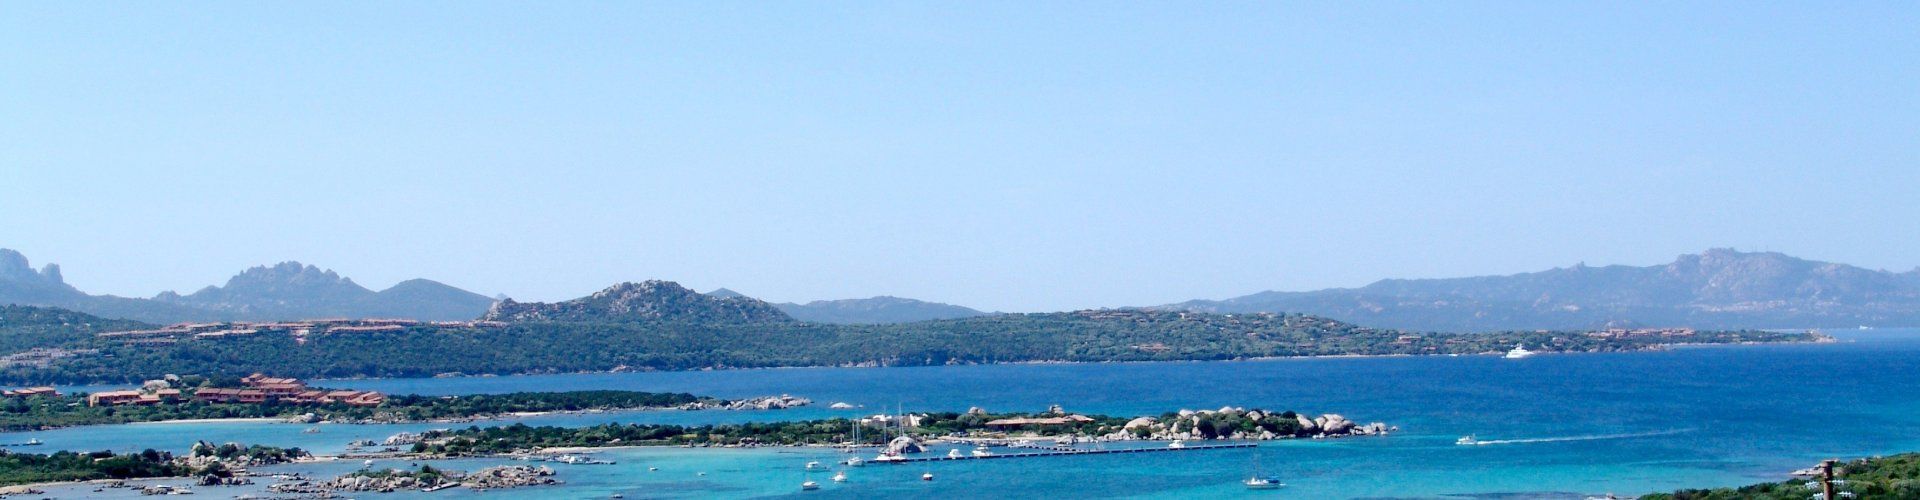 View over the Coast of Porto Rotondo close to Villa Oleandro